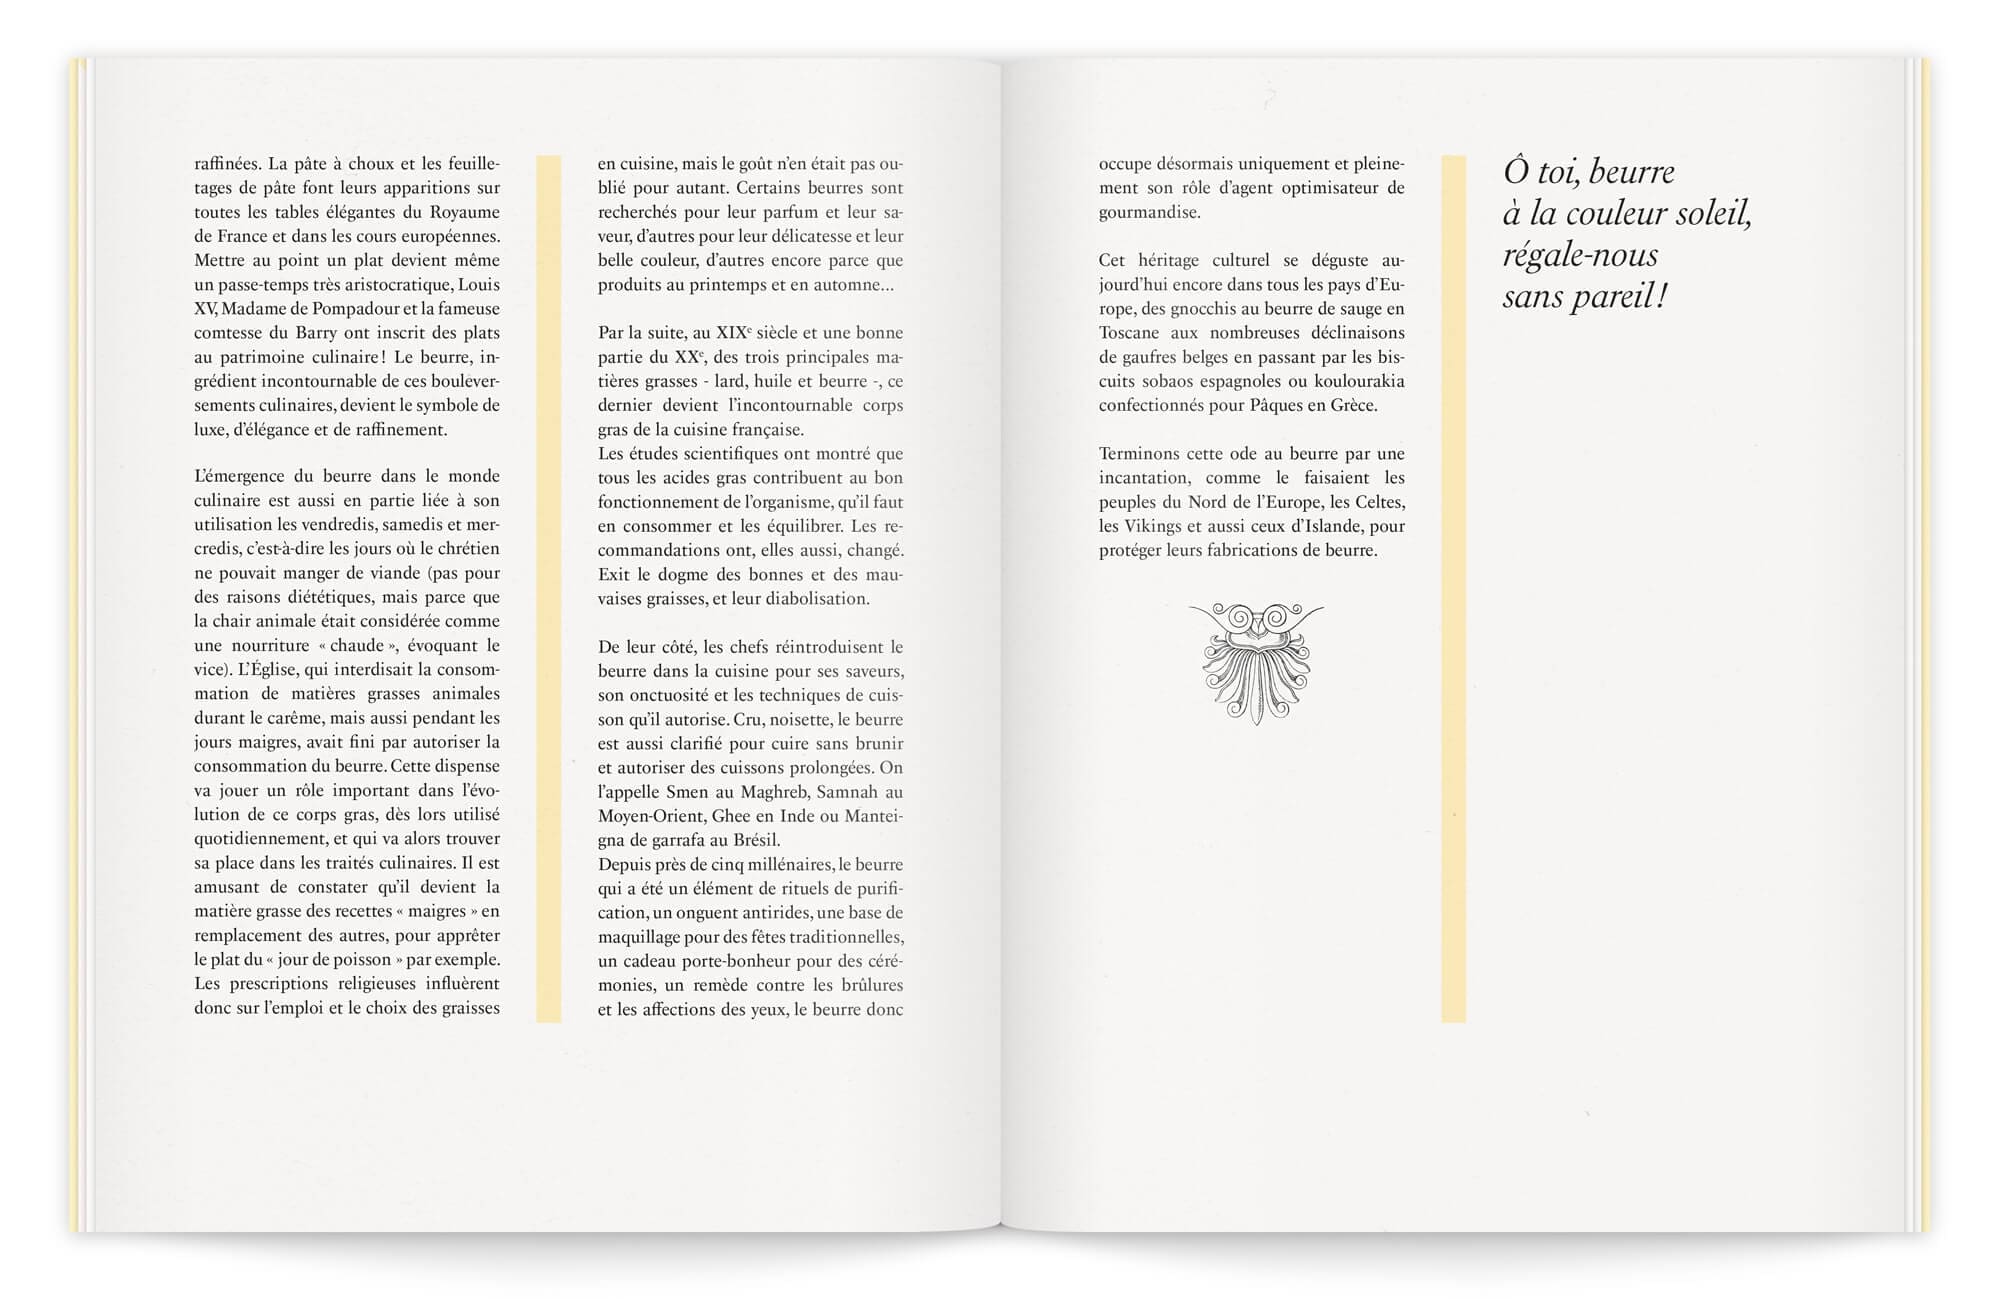 helena ichbiah compose pour cette brochure une mise en page raffinée et chic avec des choix typographiques soignés